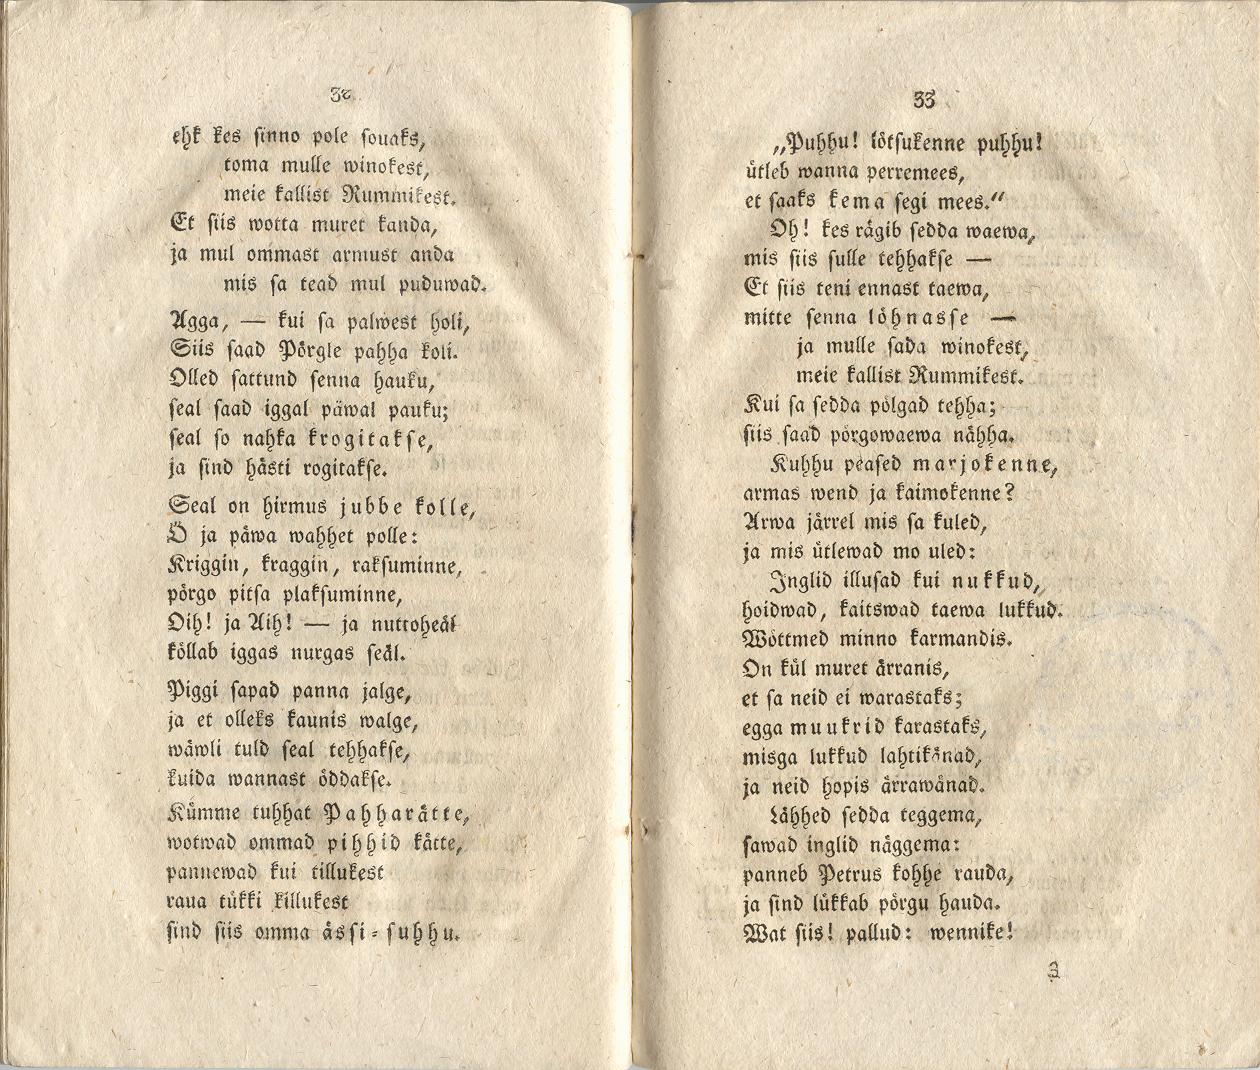 Ehstnische Originalblätter für Deutsche (1816) | 22. (32-33) Main body of text